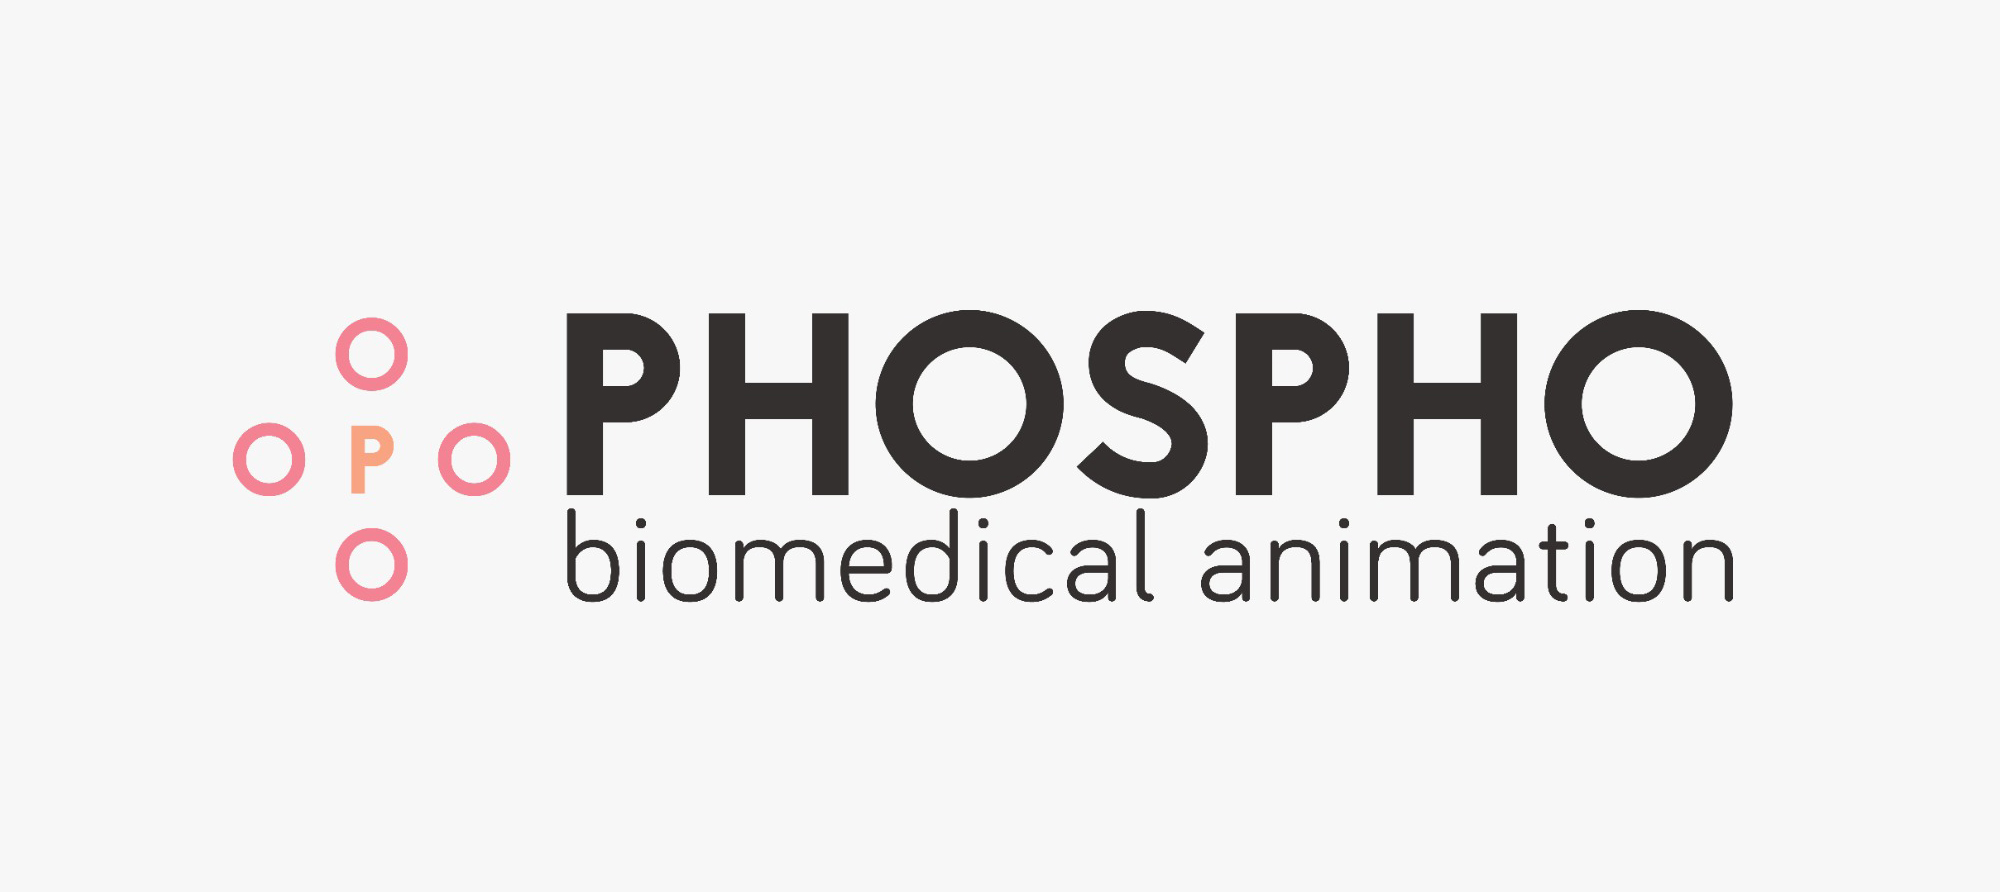 Phospho biomedical animation